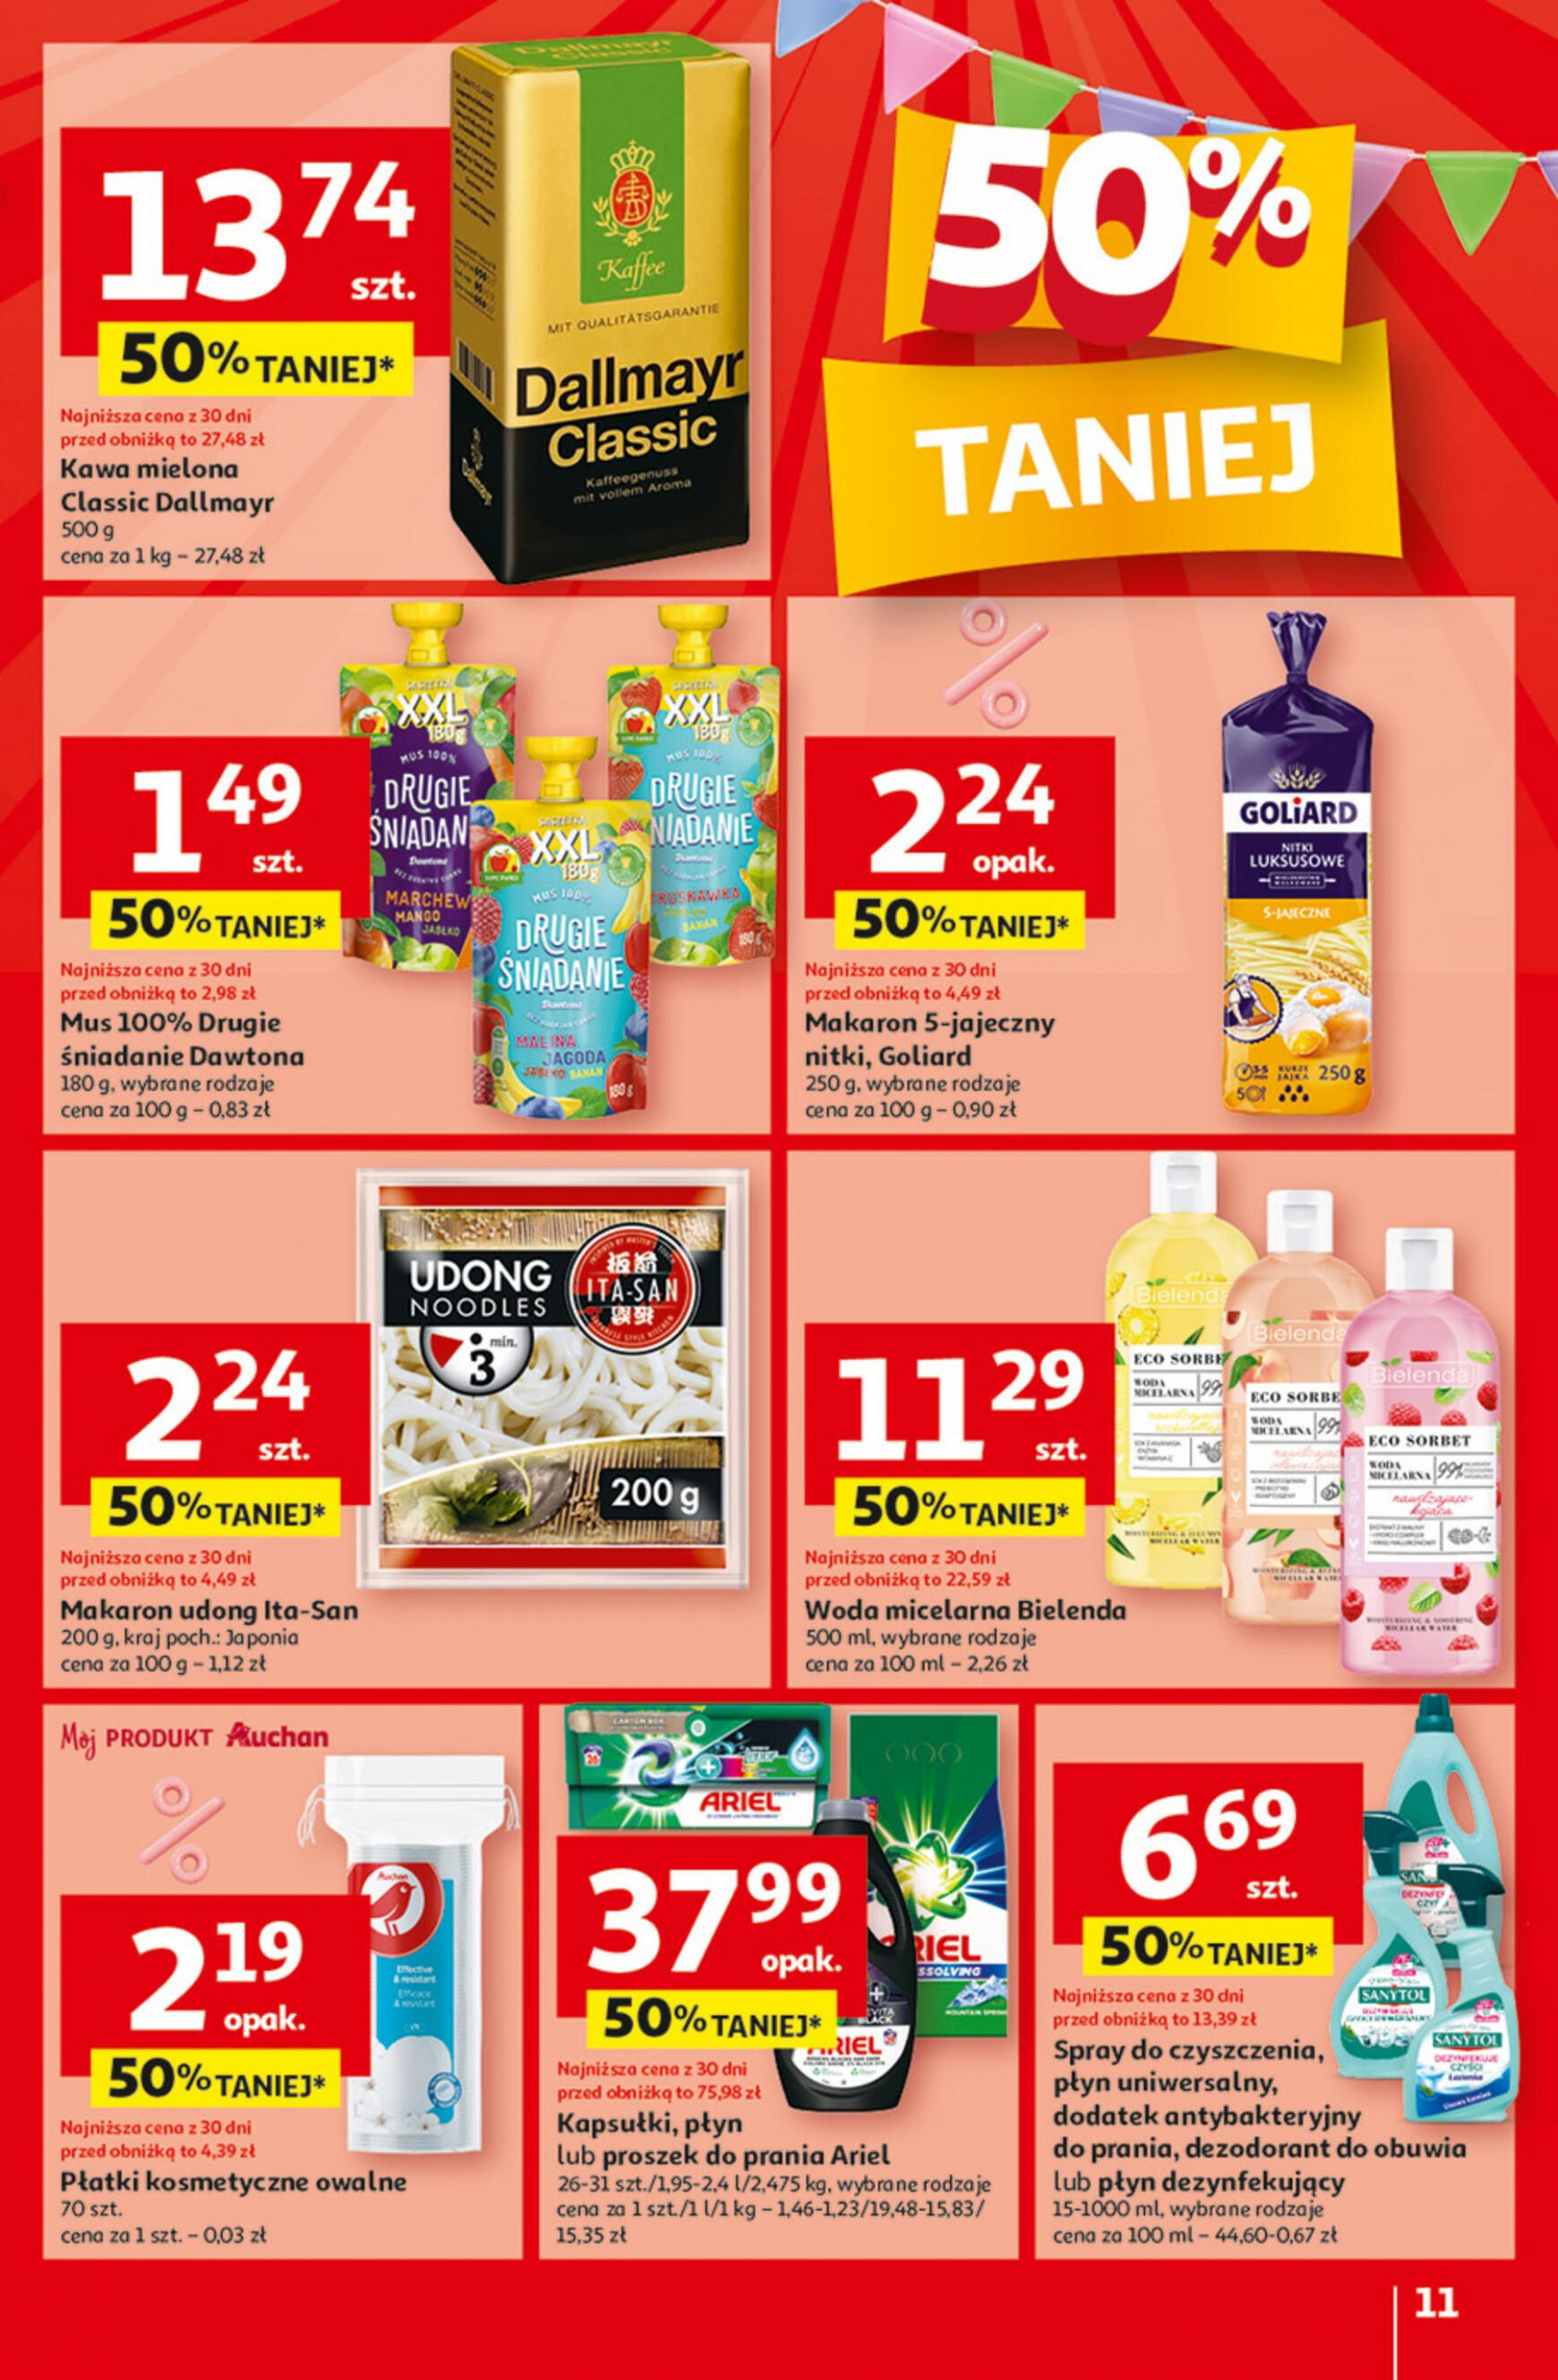 auchan - Hipermarket Auchan - Gazetka Jeszcze taniej na urodziny gazetka aktualna ważna od 09.05. - 15.05. - page: 11